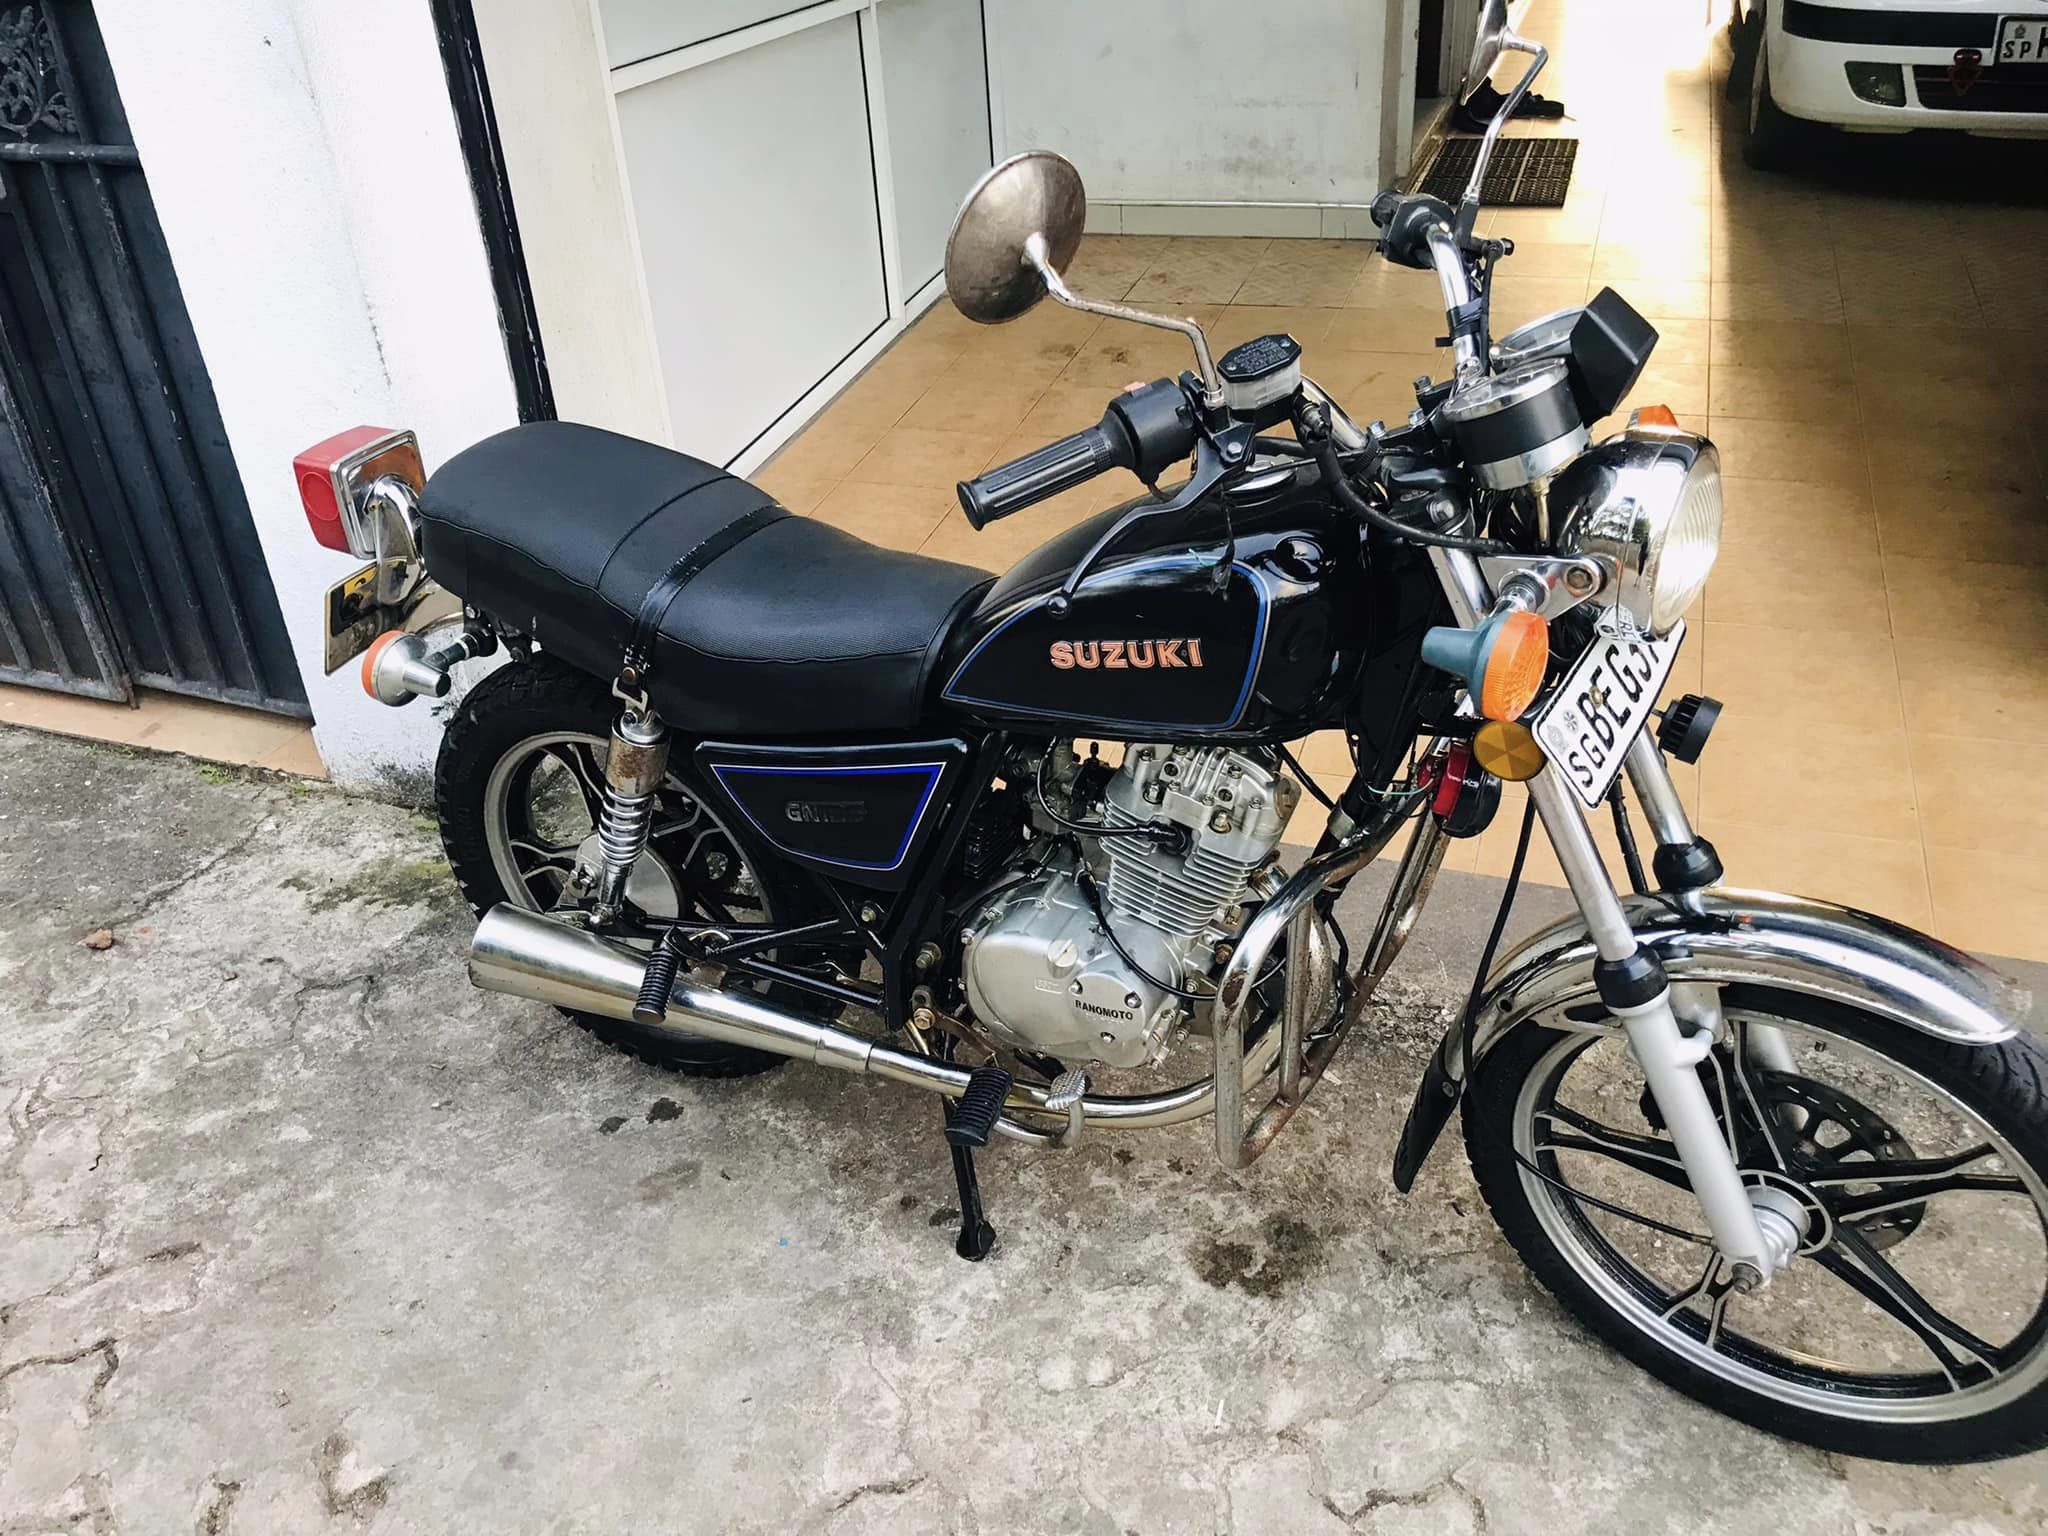 Suzuki GN 125-2 price